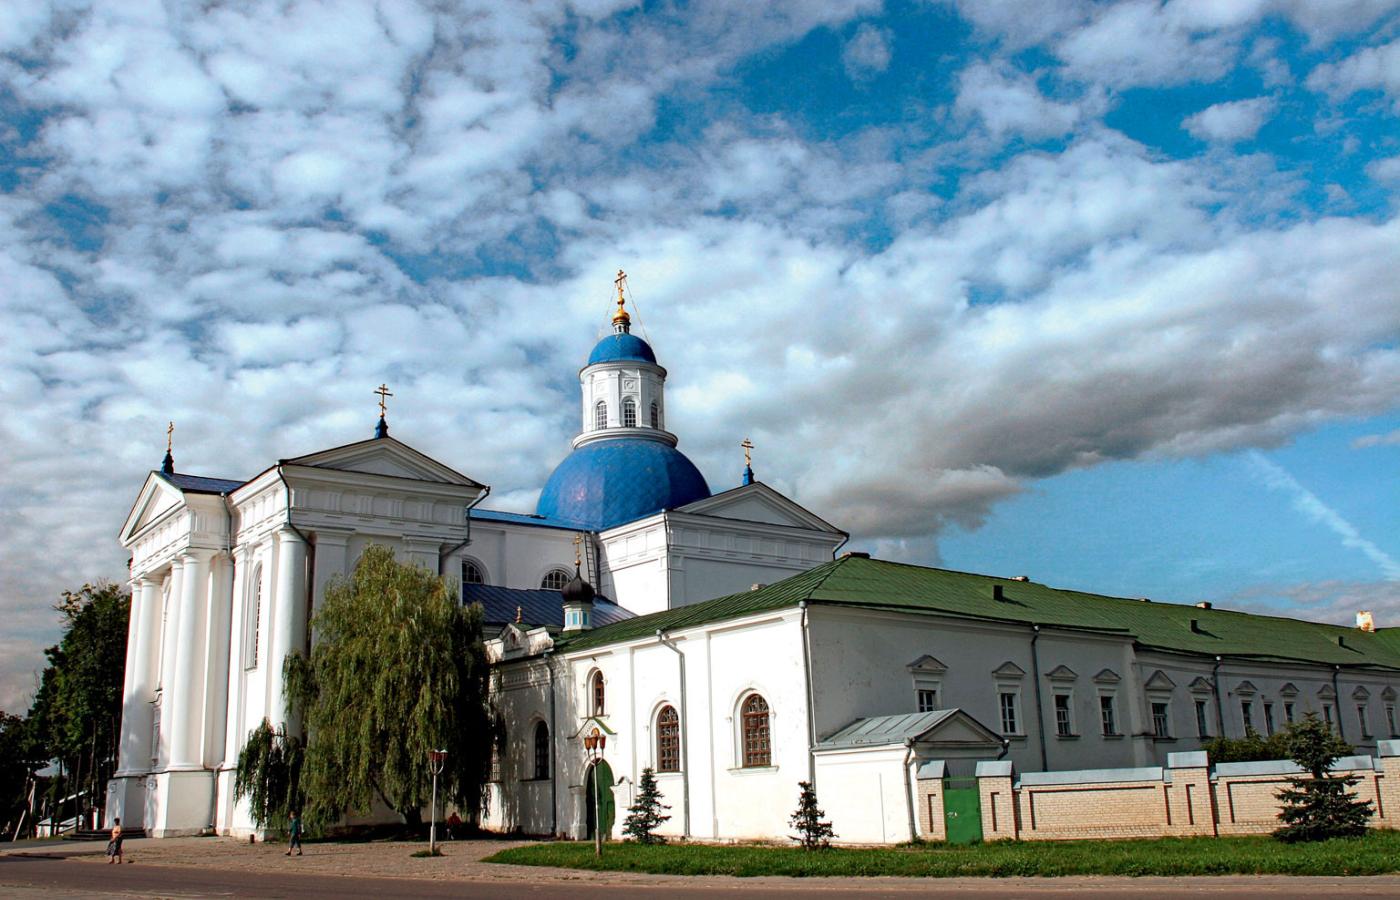 Prawosławne centrum religijne w Żyrowicach koło Słonimia (cerkiew, seminarium, kaplice), największy tego typu kompleks na Białorusi